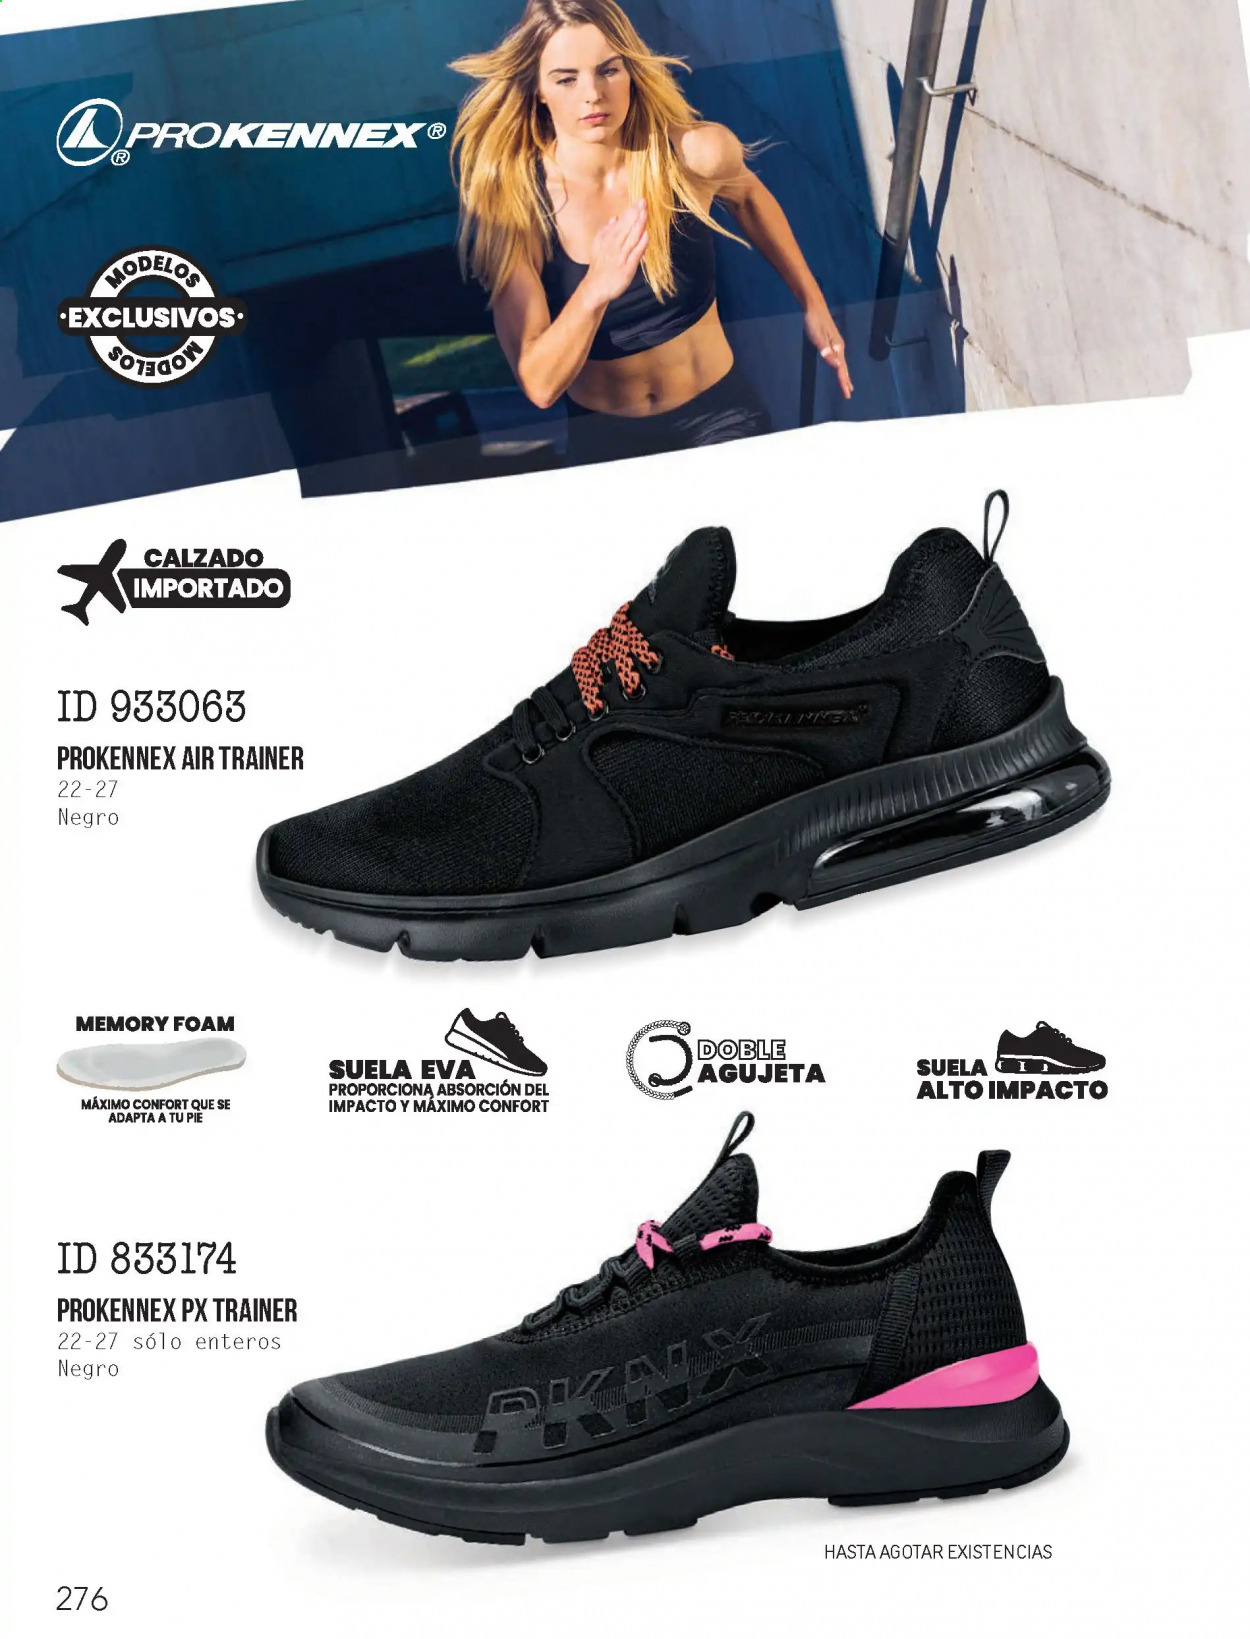 Catálogo Price Shoes.